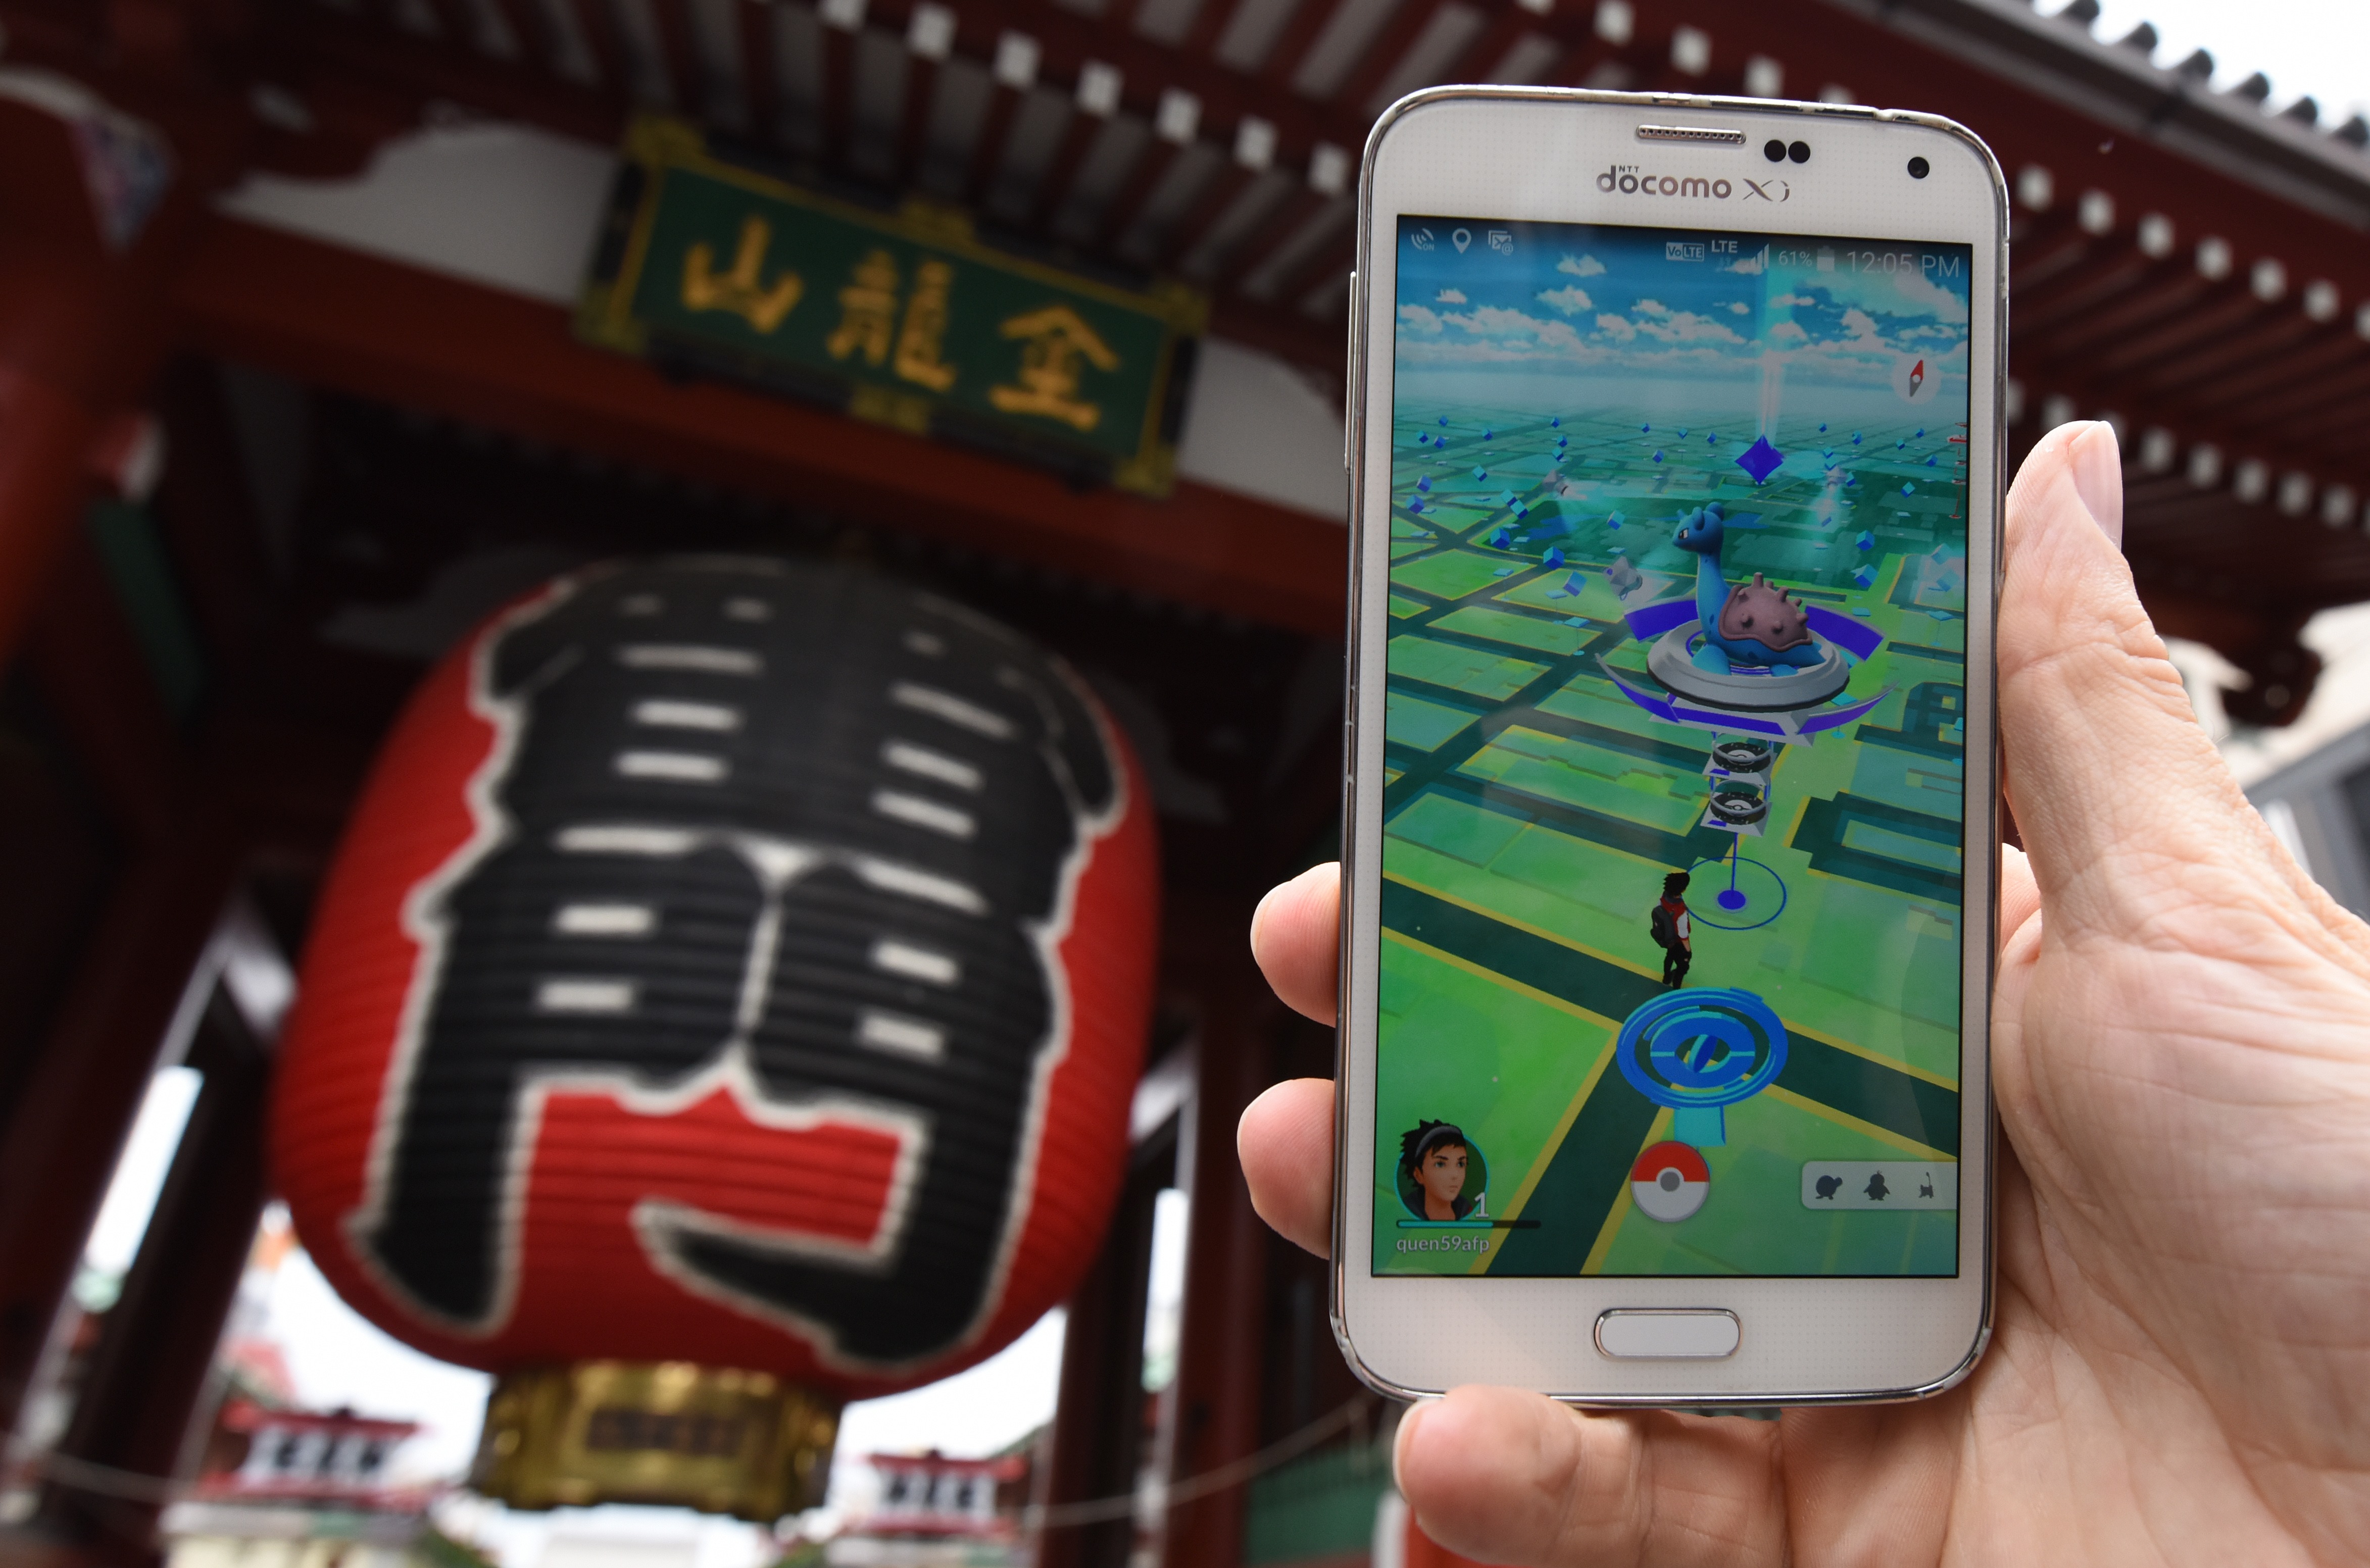 Le phénomène Pokémon Go débarque au Japon ce vendredi 22 juillet. Un partenariat a été conclu avec McDonald's pour que les enseignes servent d'arènes et de PokéStops